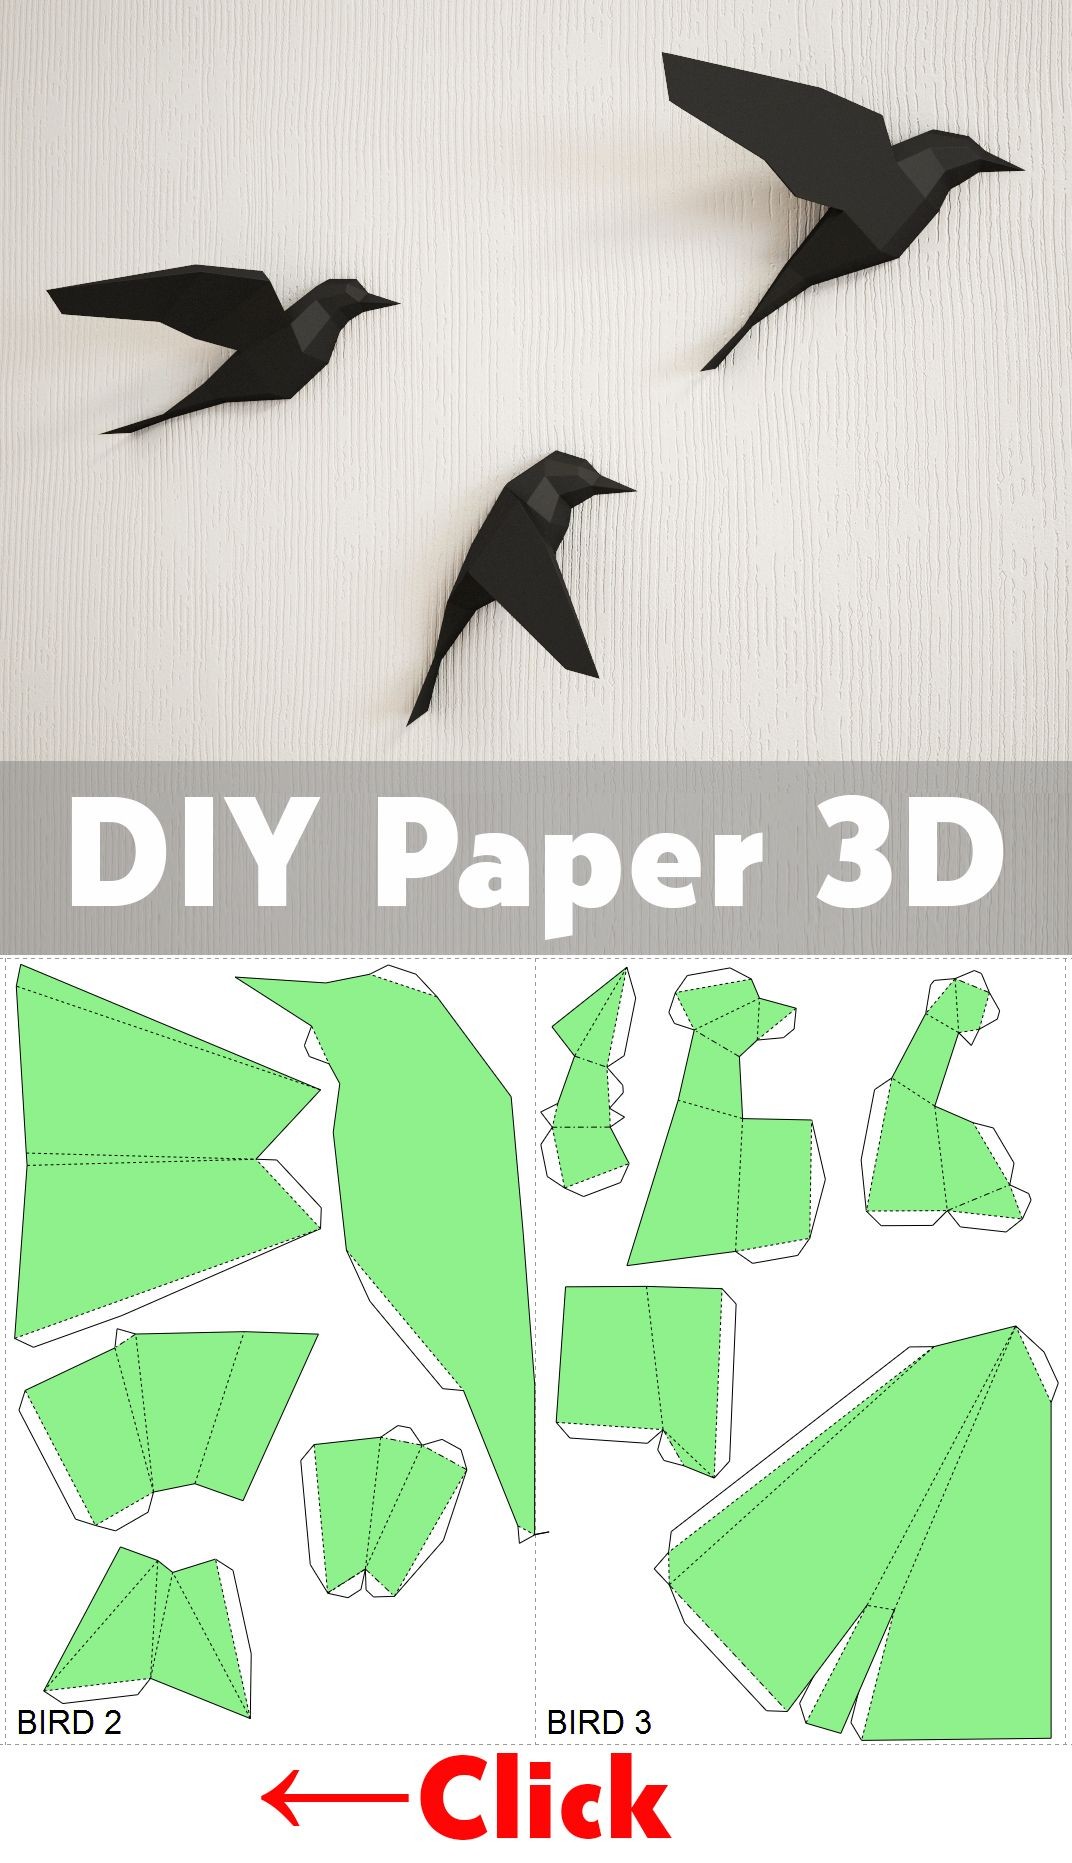 Papercraft Chicken Diy Paper Birds On Wall 3d Papercraft Easy Paper Model Sculpture